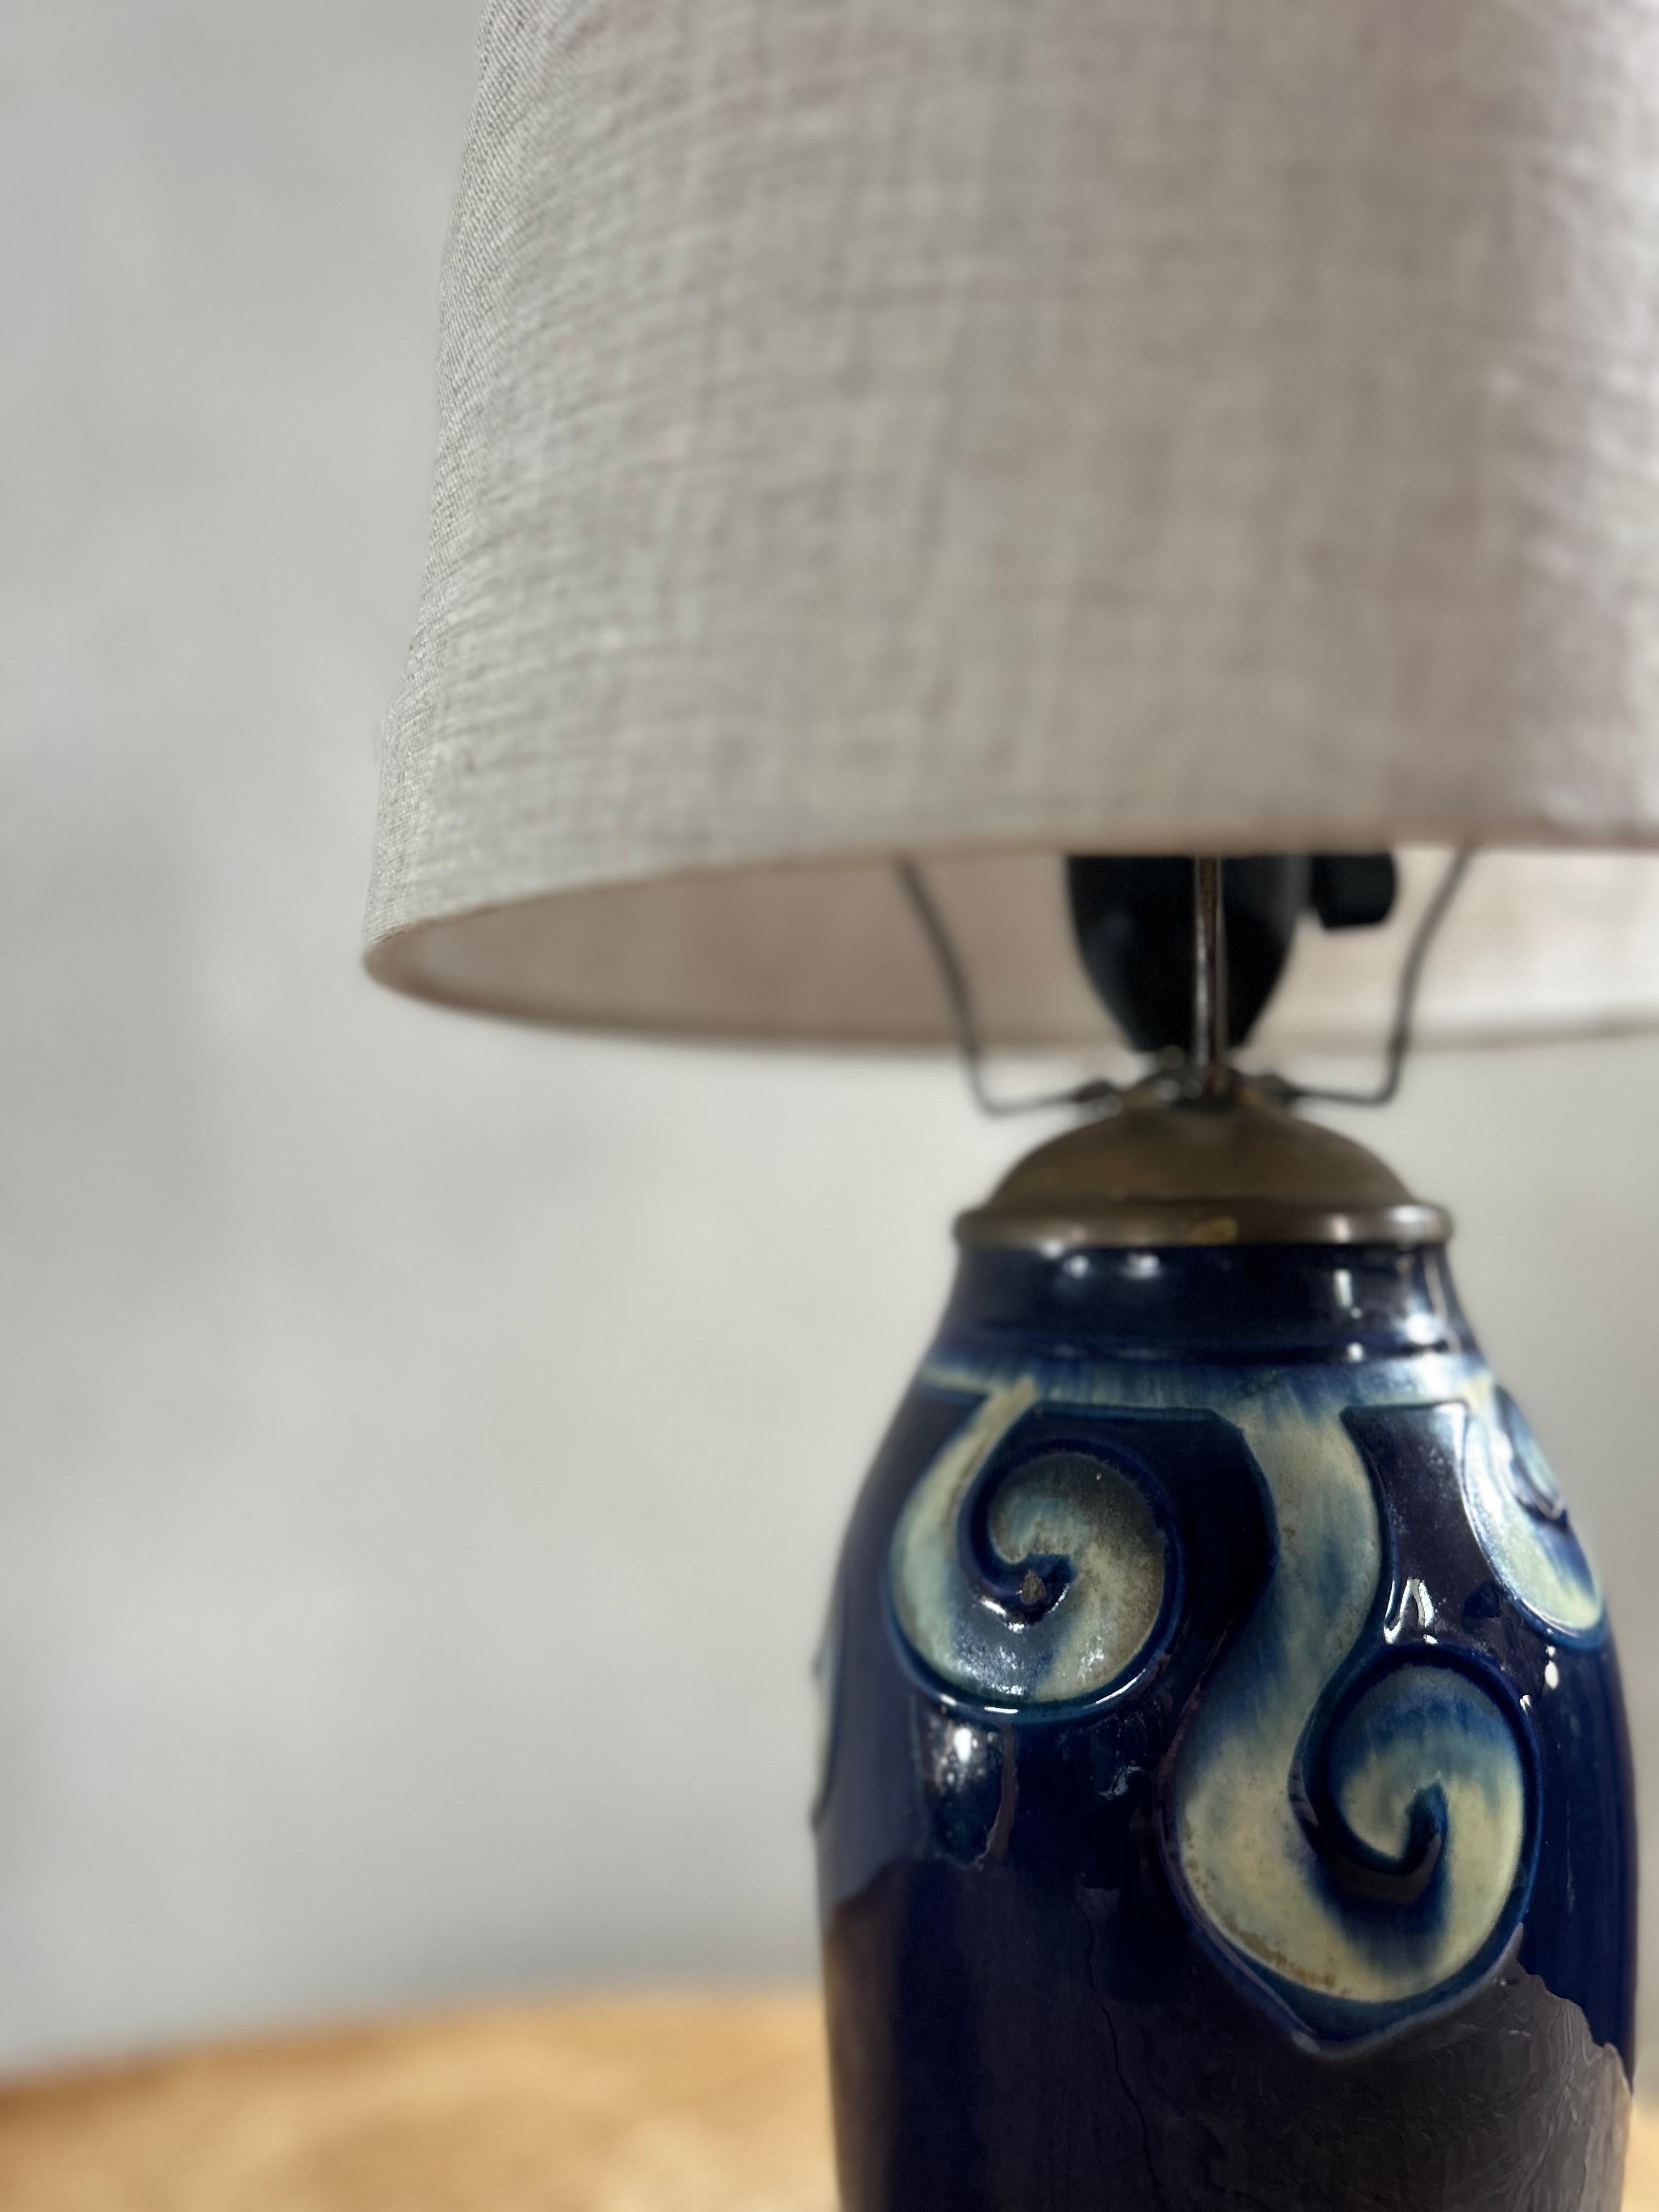 Beleuchten Sie Ihren Raum mit dem Charme und Charakter des dänischen Arts-and-Crafts-Designs mit dieser exquisiten antiken Keramik-Tischlampe, die in den 1910er Jahren in Dänemark entstand. Diese mit viel Liebe zum Detail und mit Hingabe an die